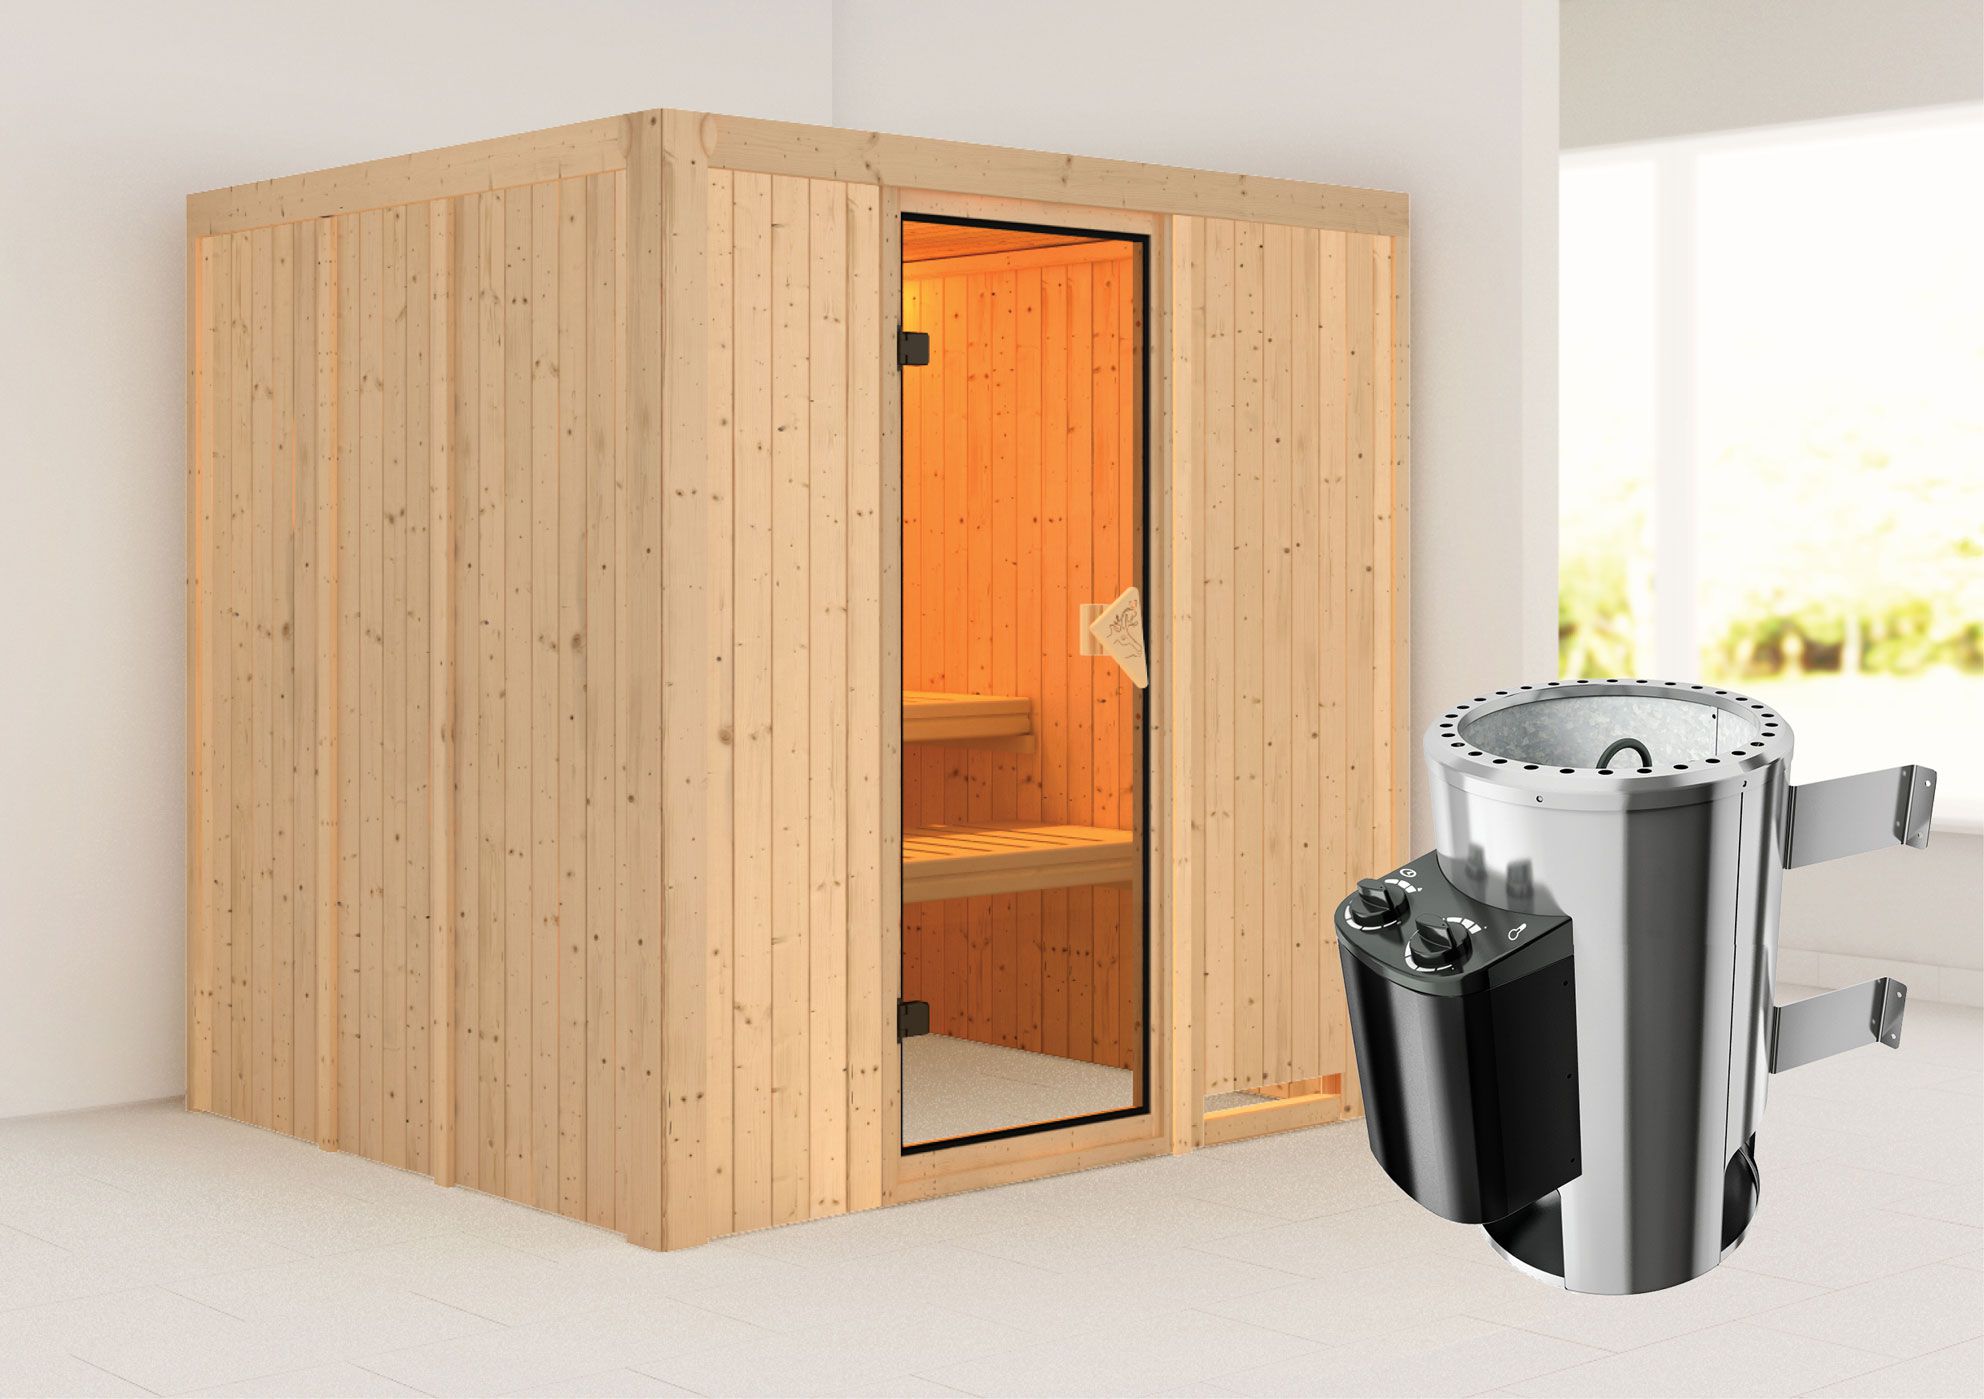 Sauna "Agnar" SET met bronskleurige deur & kachel 3,6 kW integ. Besturing - 196 x 170 x 198 cm (B x D x H)